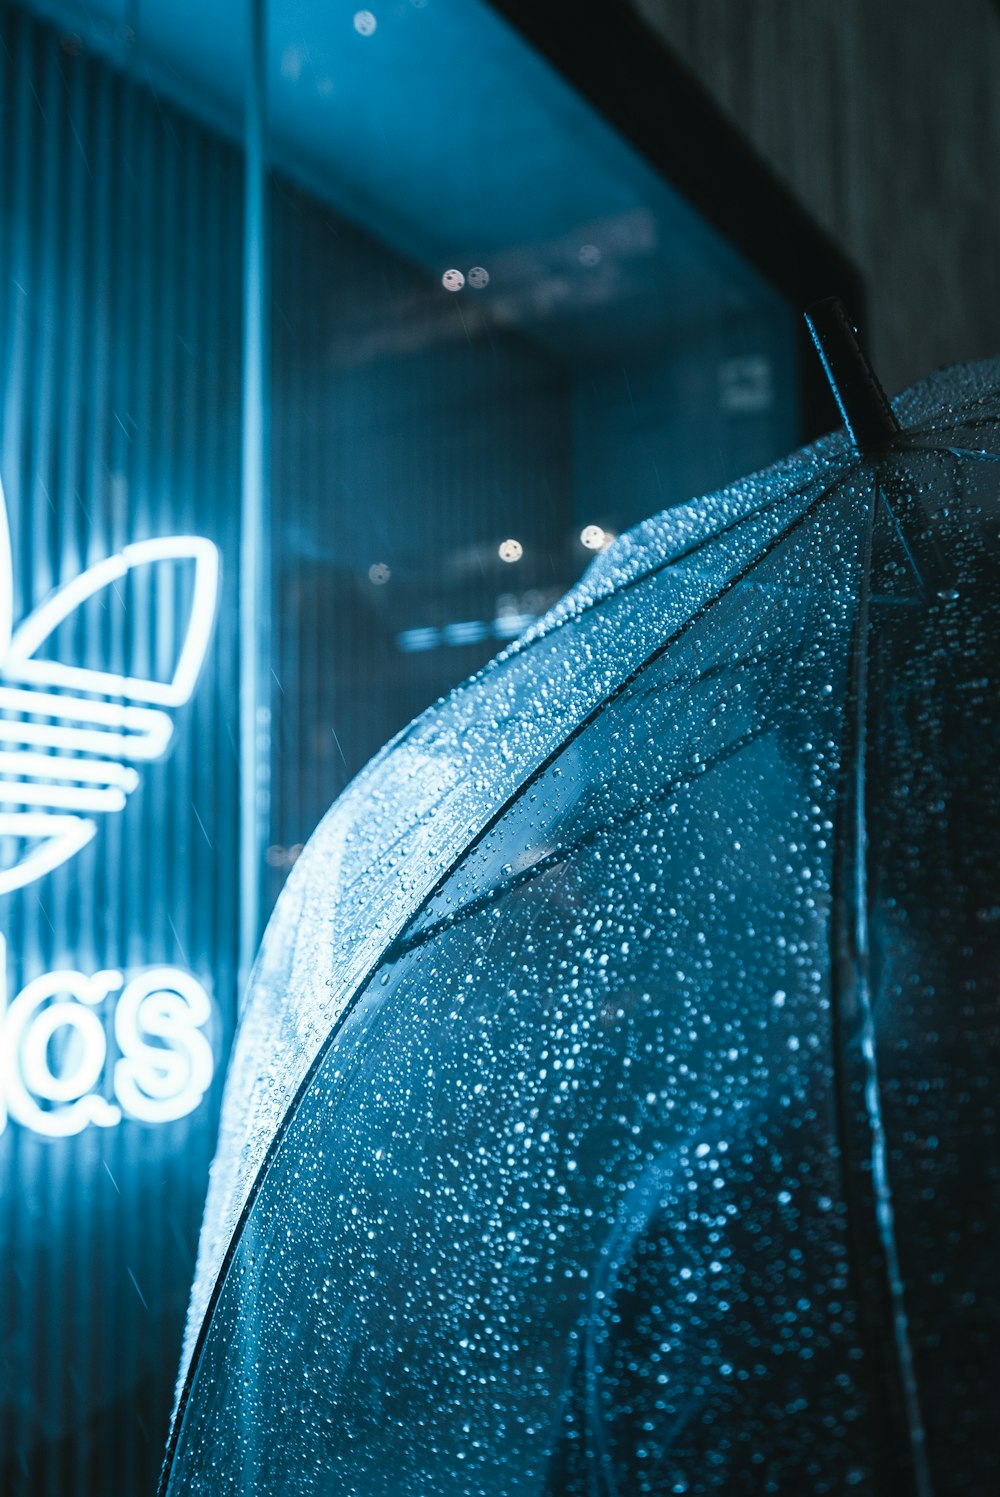 Adidas Neon Signage Photo Rainy Image